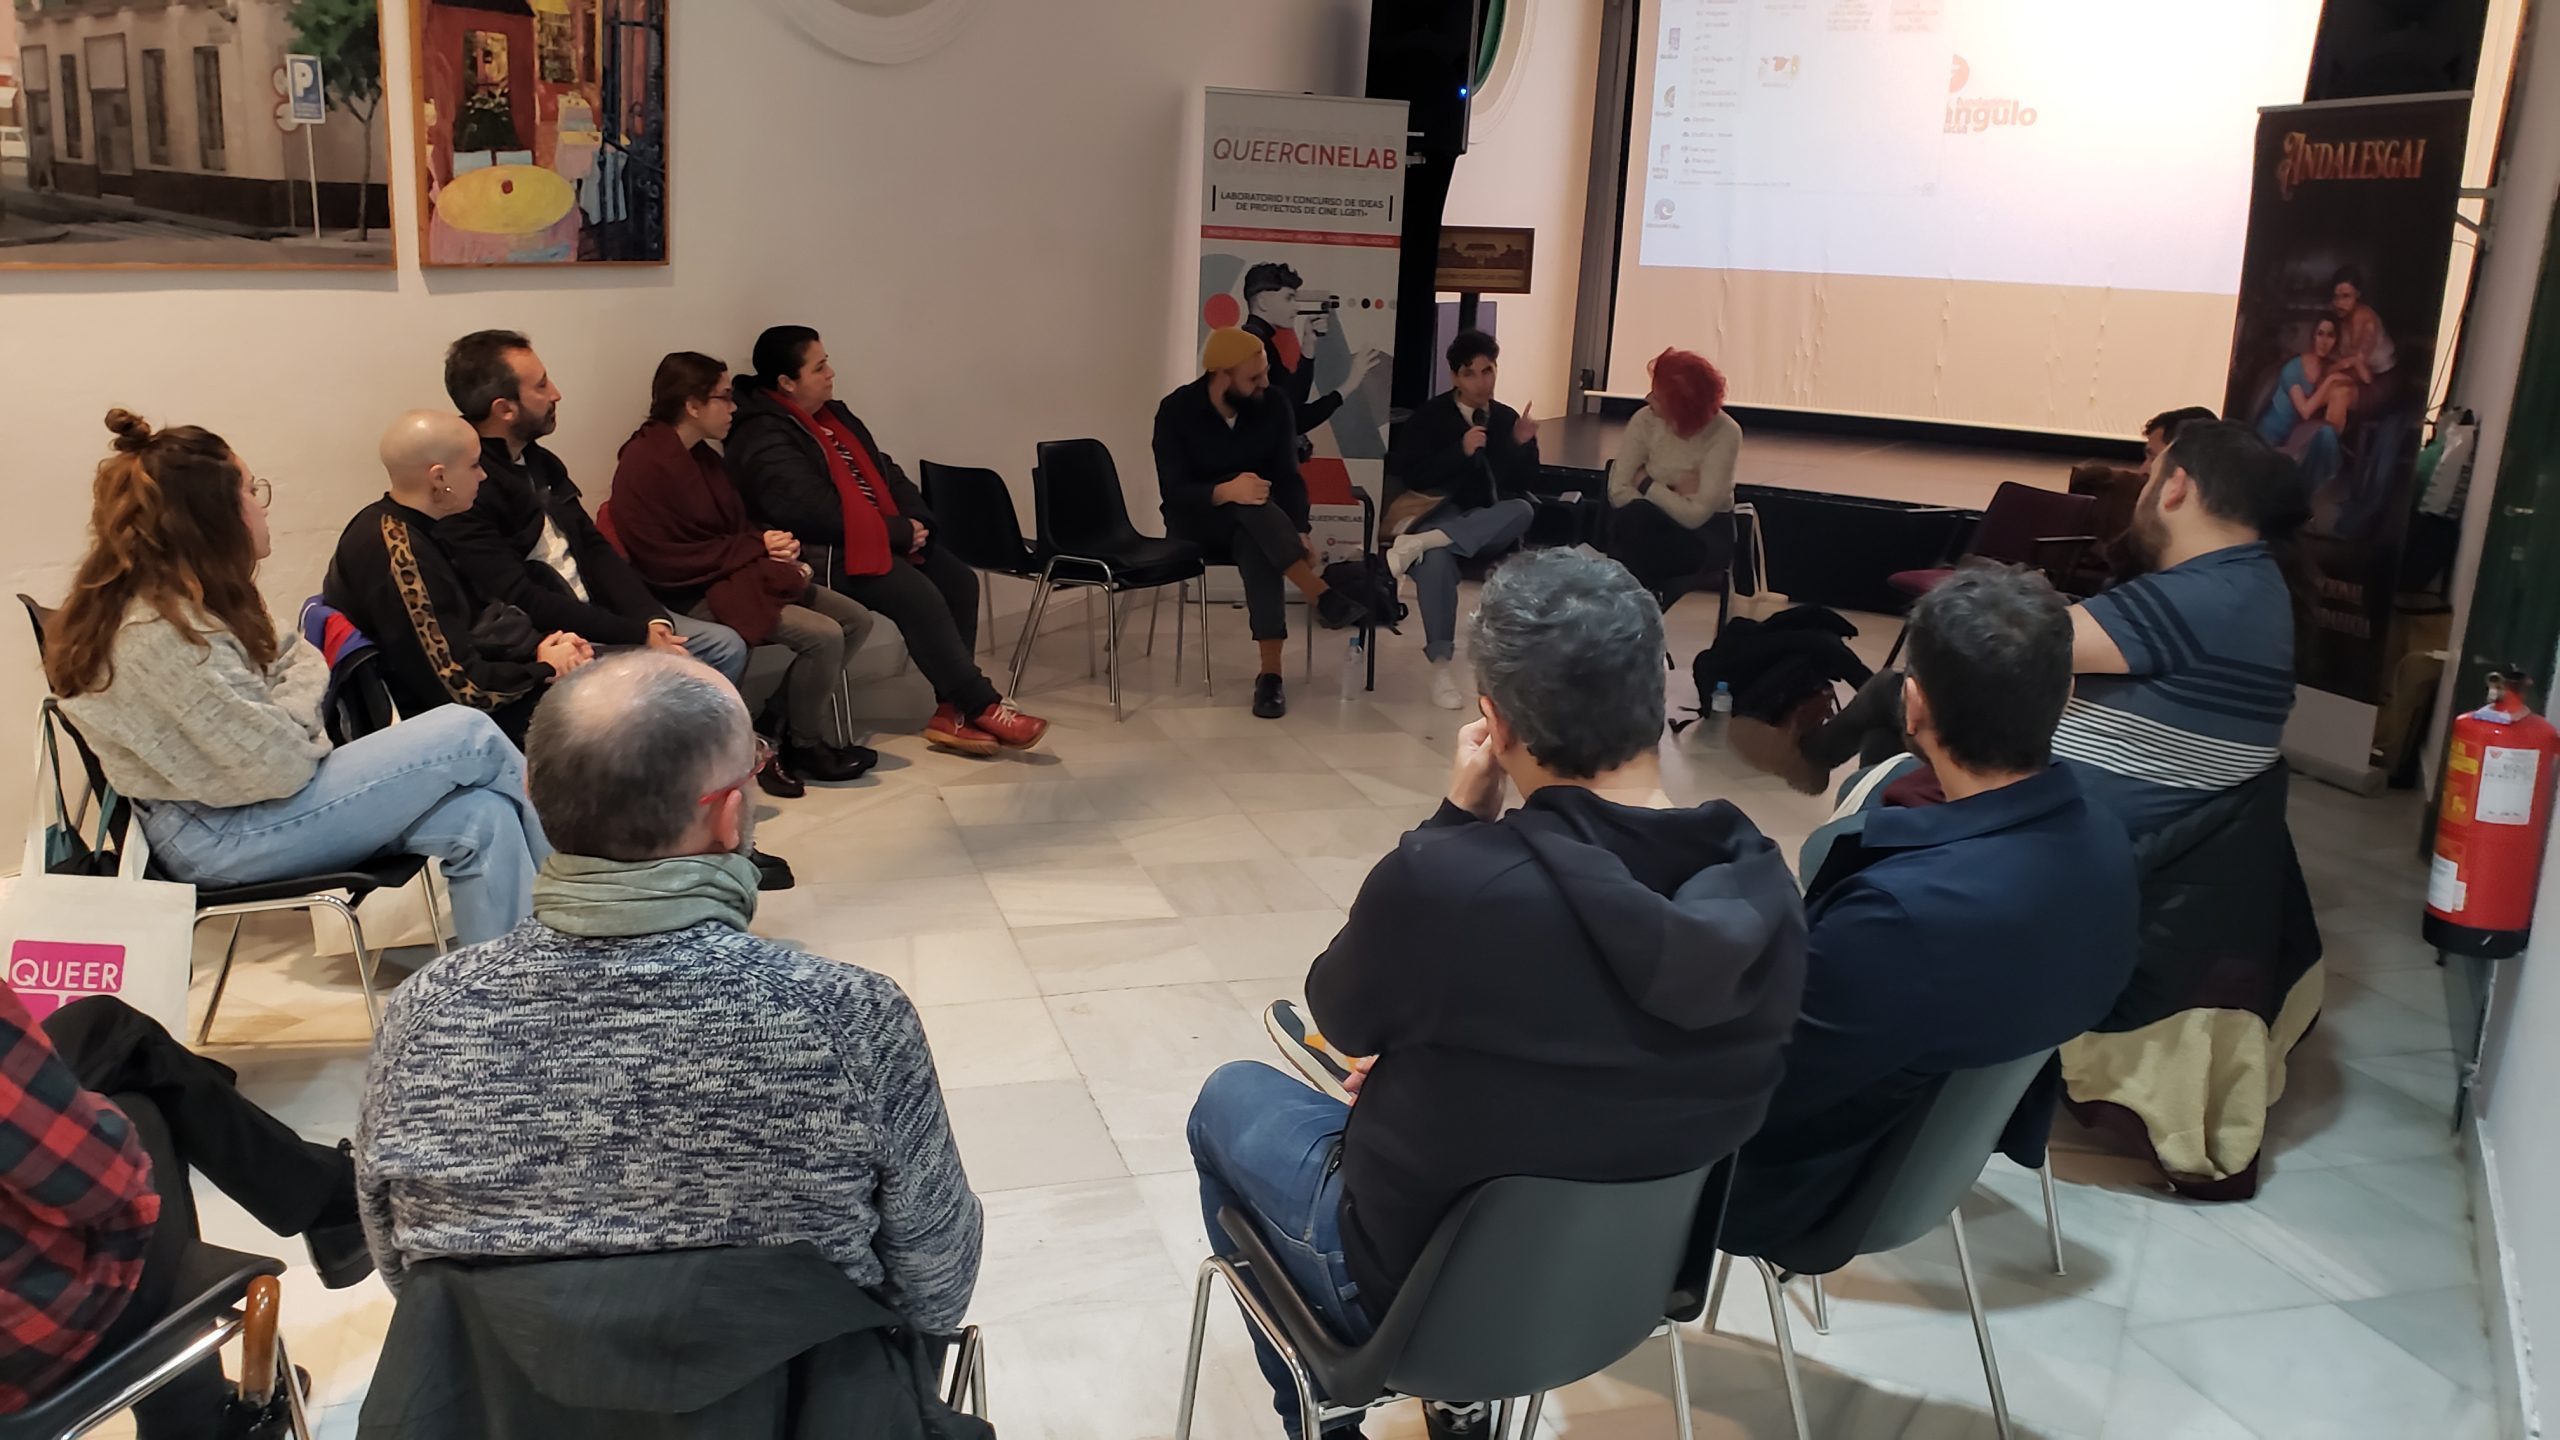 QueerCineLab 2022 - Presentación general de los laboratorios de cortometrajes 2022 en Sevilla